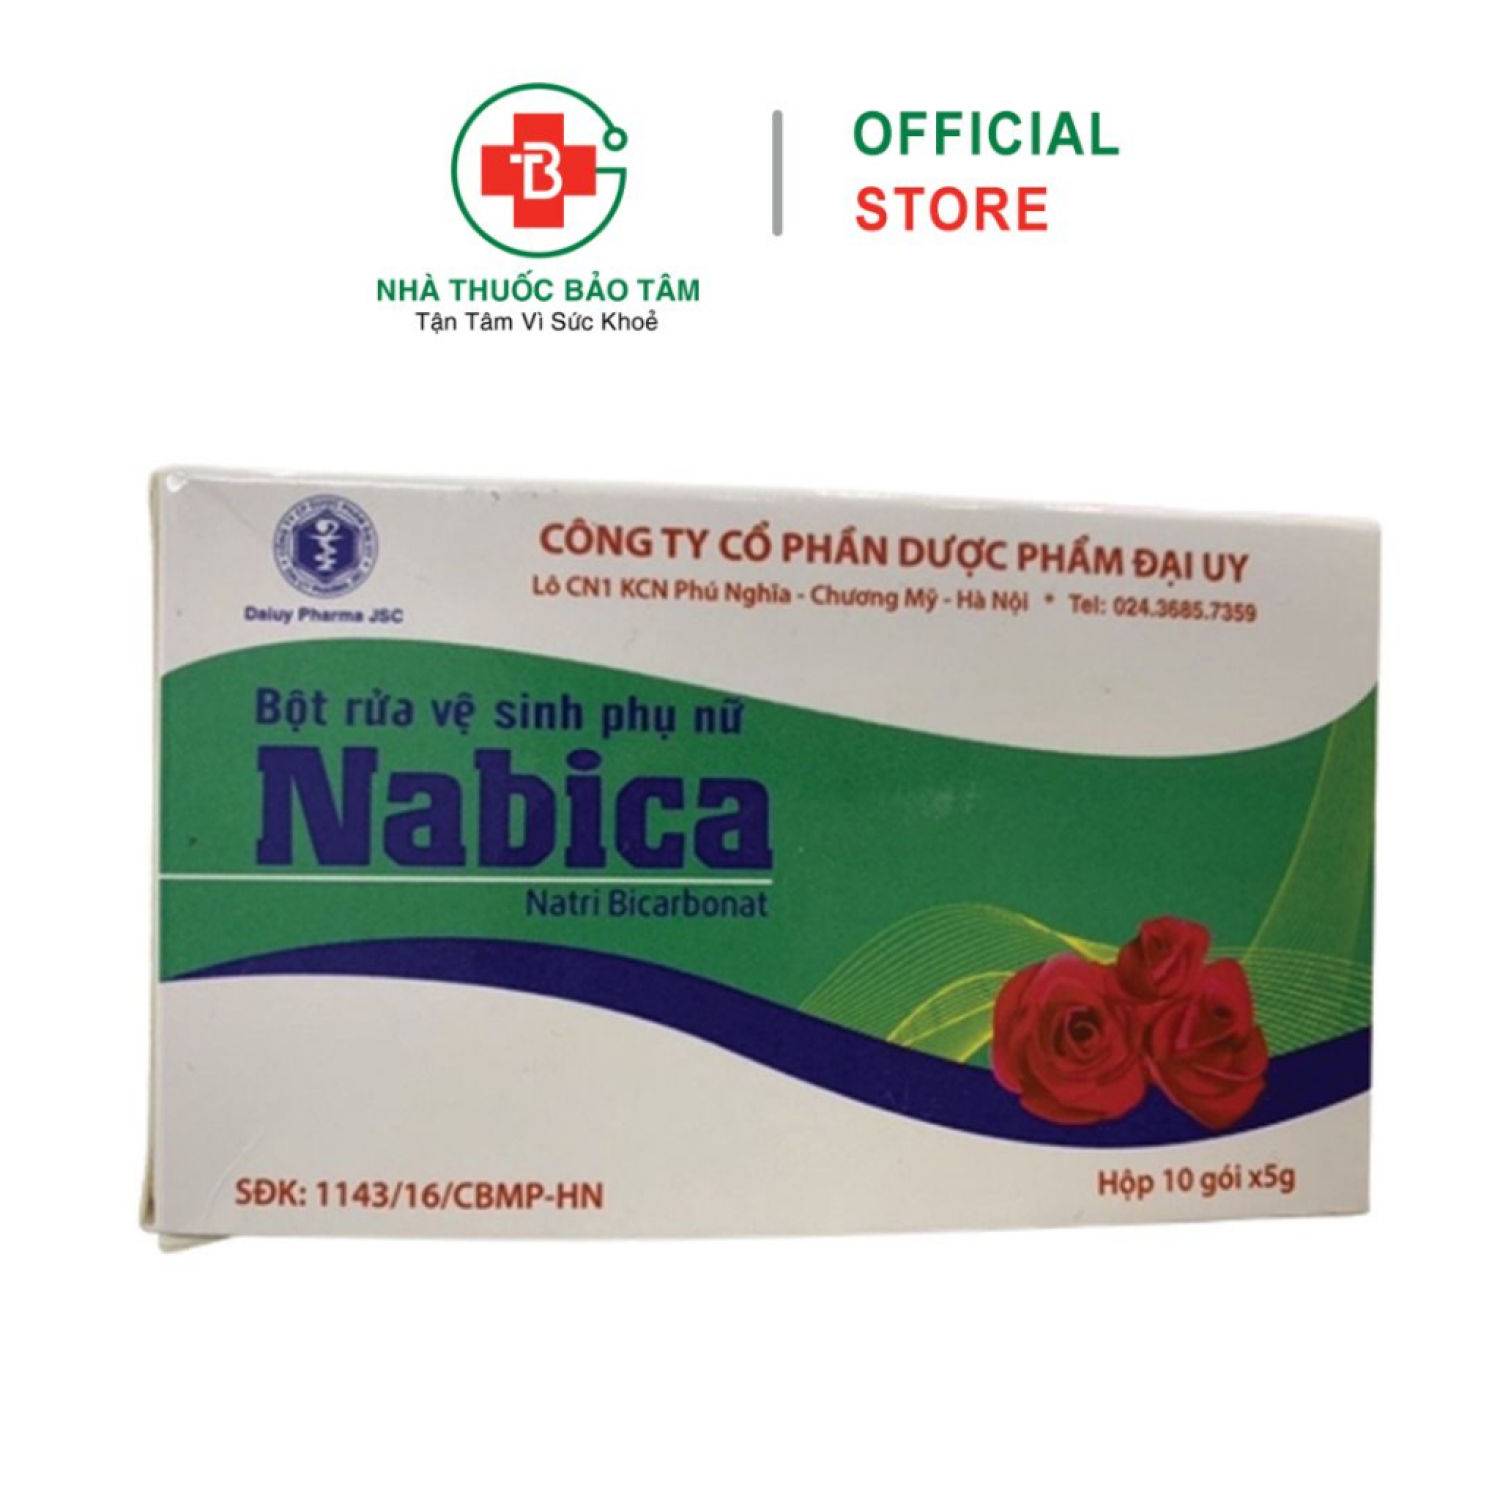 NABICA hộp 10 gói - Muối rửa vệ sinh phụ nữ, làm sạch, ngăn ngừa nấm ngứa